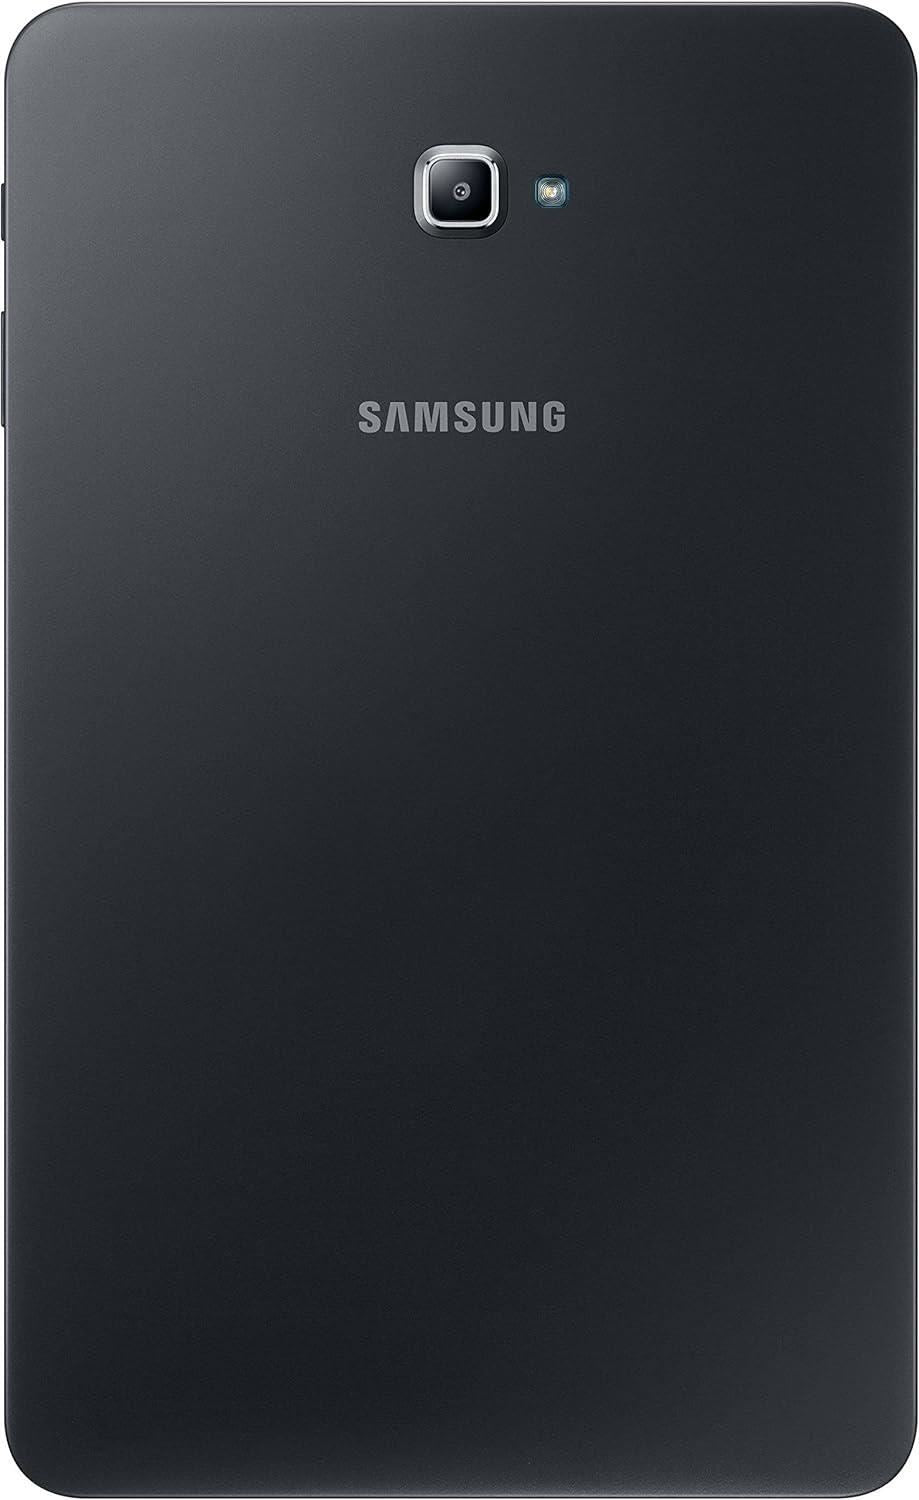 Samsung Galaxy Tab A 10.1 2016 Wi-Fi + 4G